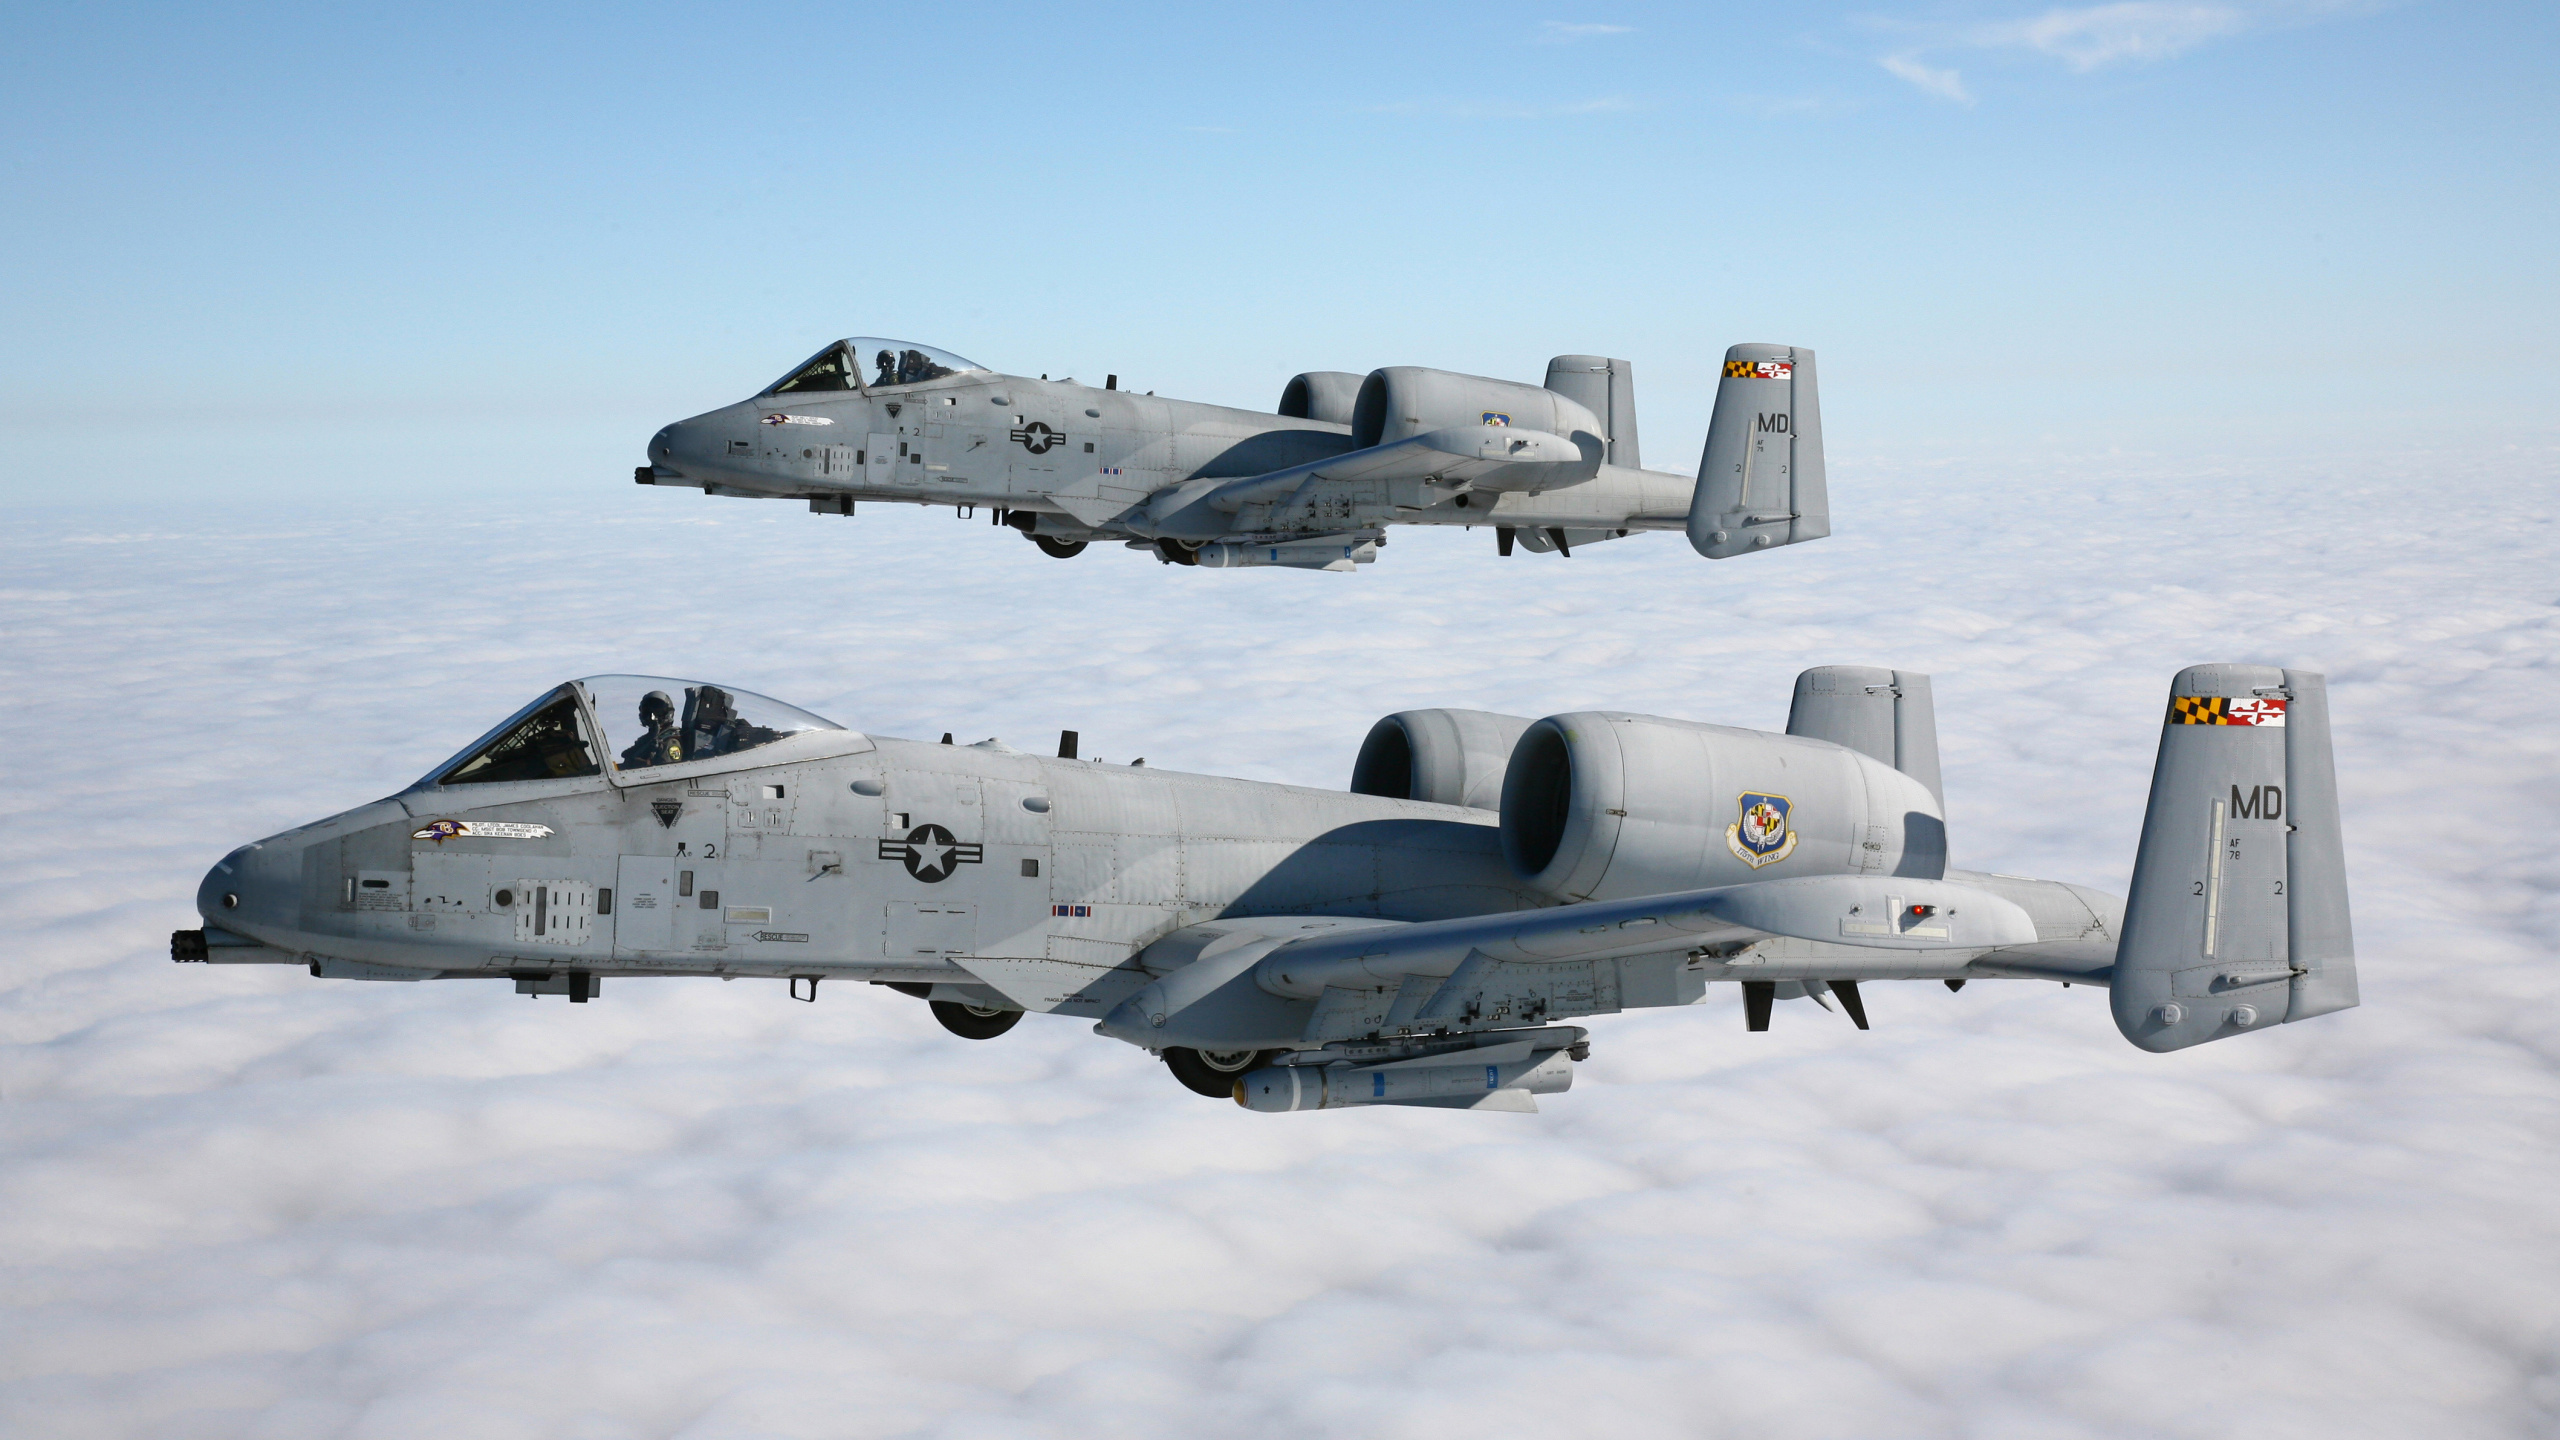 军用飞机, 喷气式飞机, 航空, 空军, 对地攻击机 壁纸 2560x1440 允许